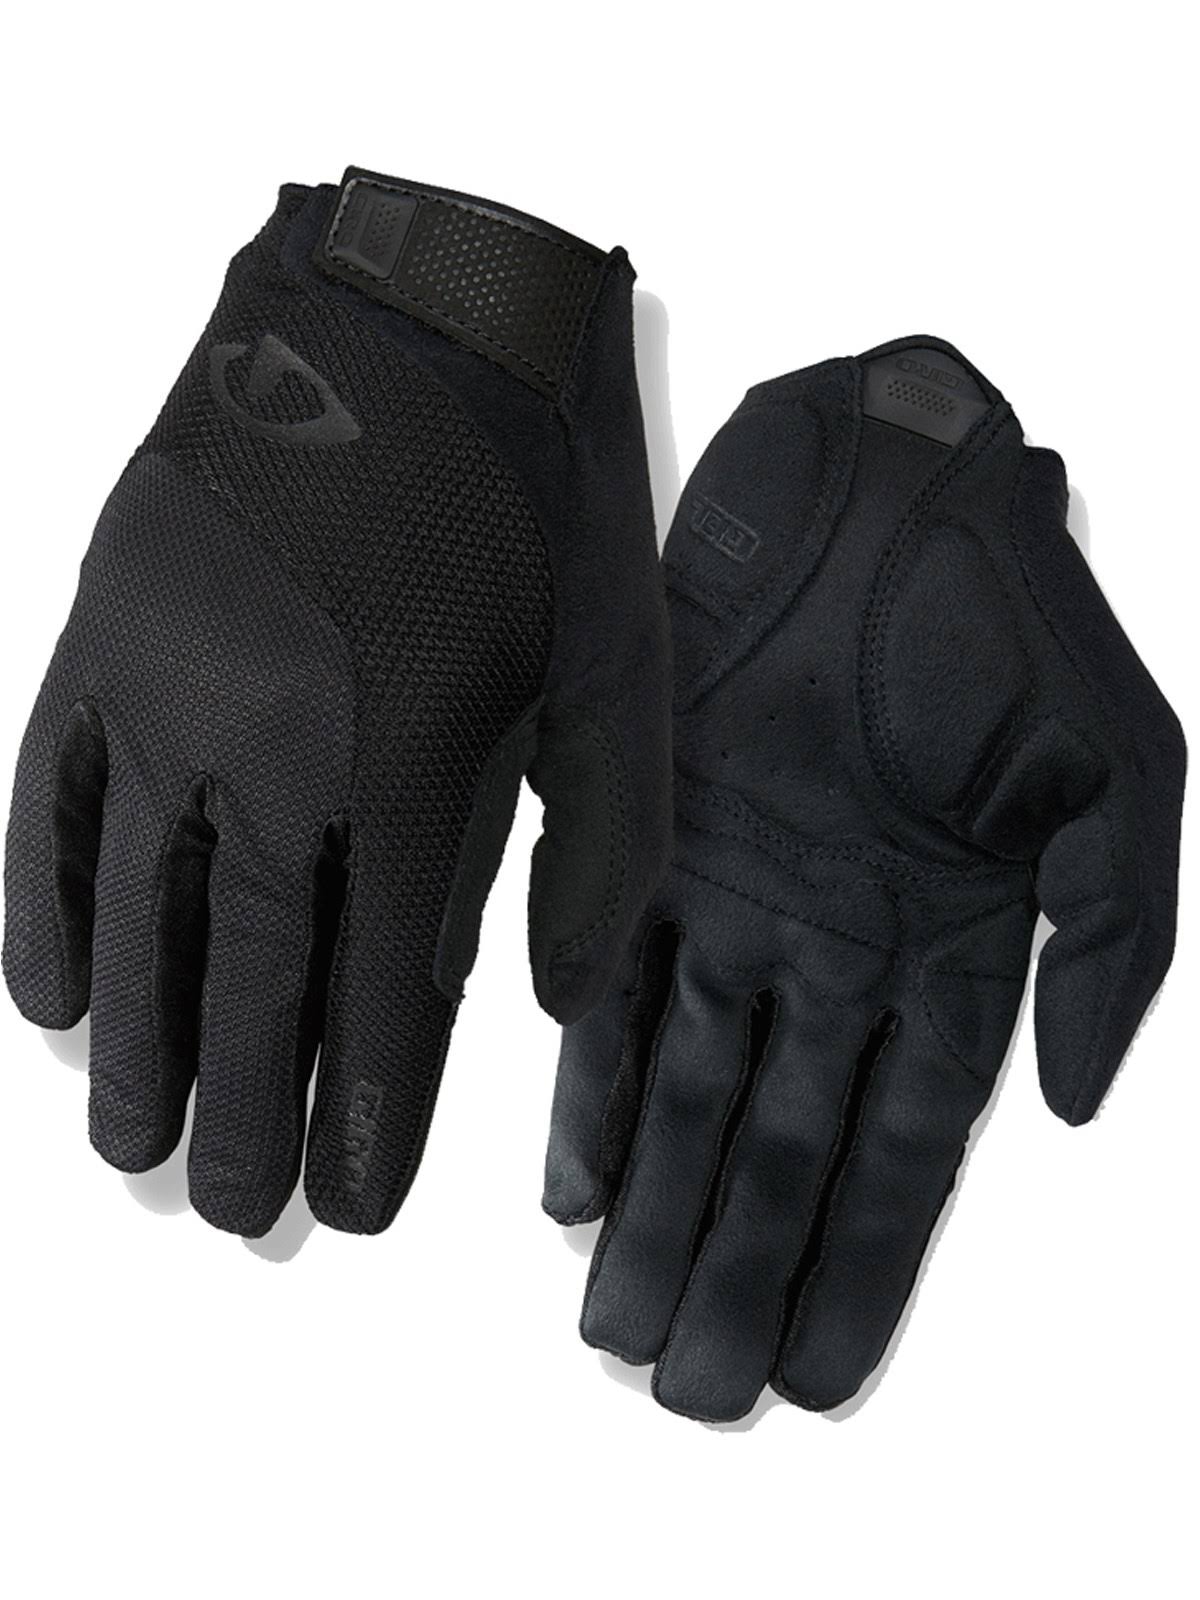 Giro Bravo Gel Gloves - Black, Large